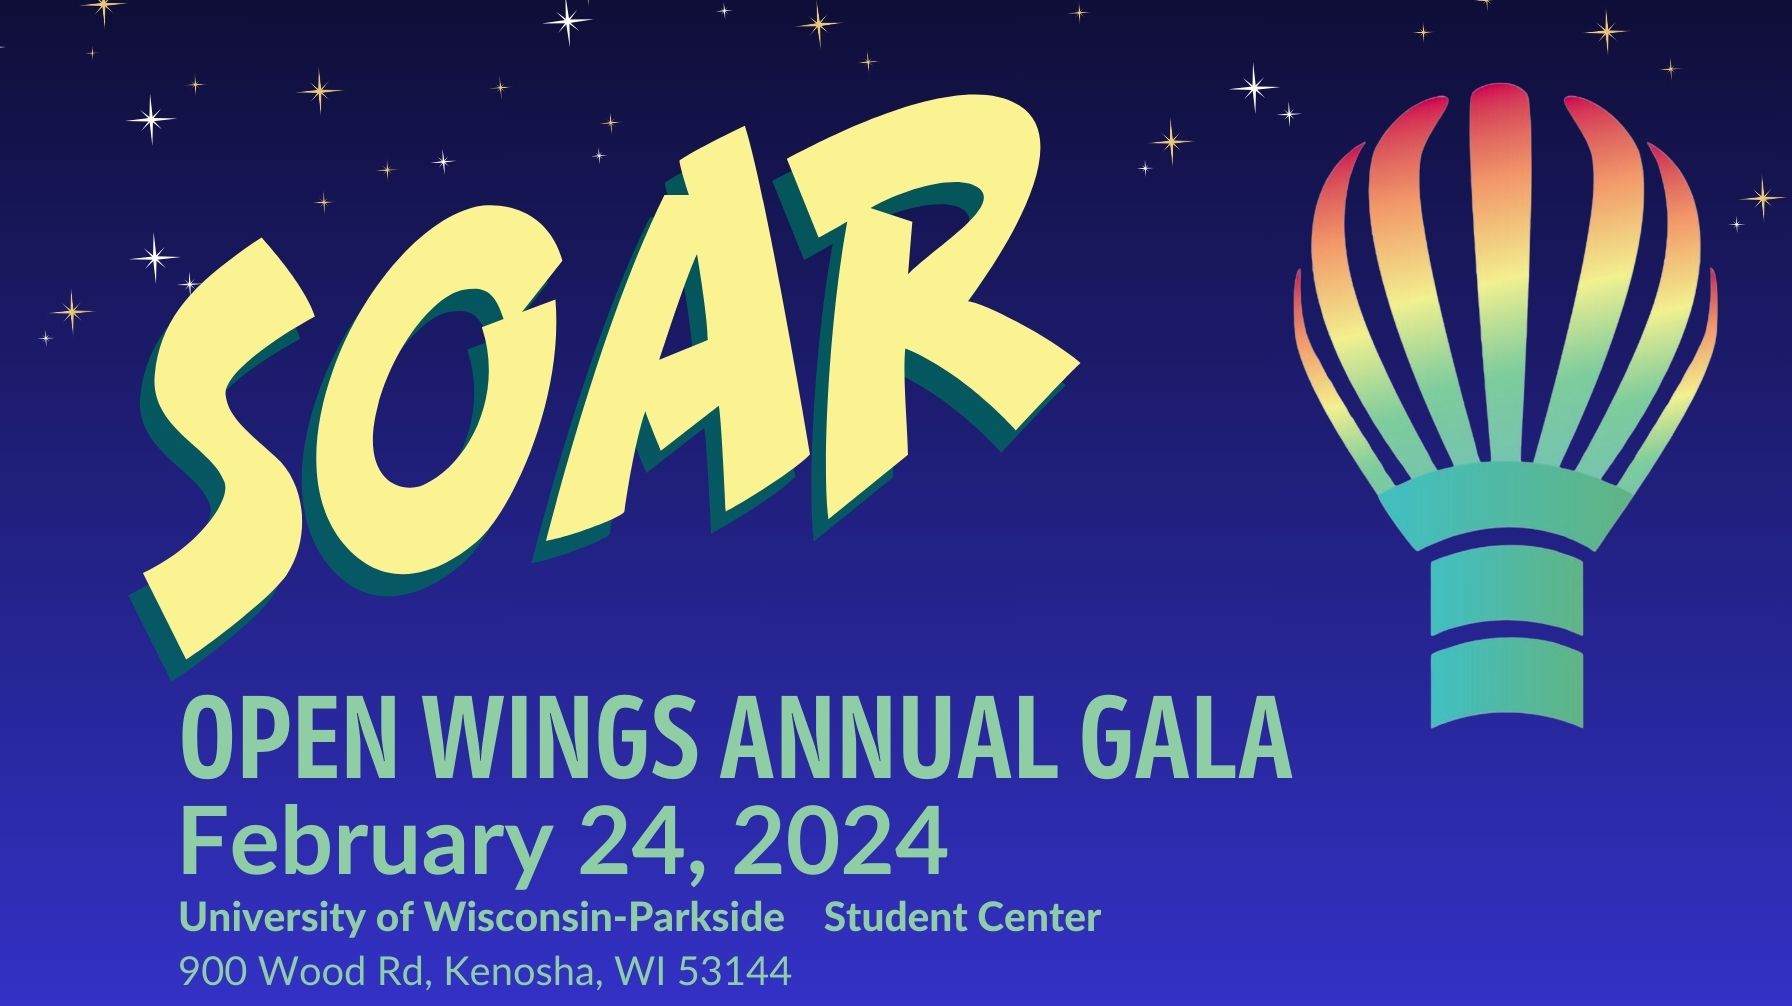 SOAR Open Wings Annual Gala, February 24, 2024, University of Wisconsin-Parkside Student Center, 900 Wood Road, Kenosha, WI 53144